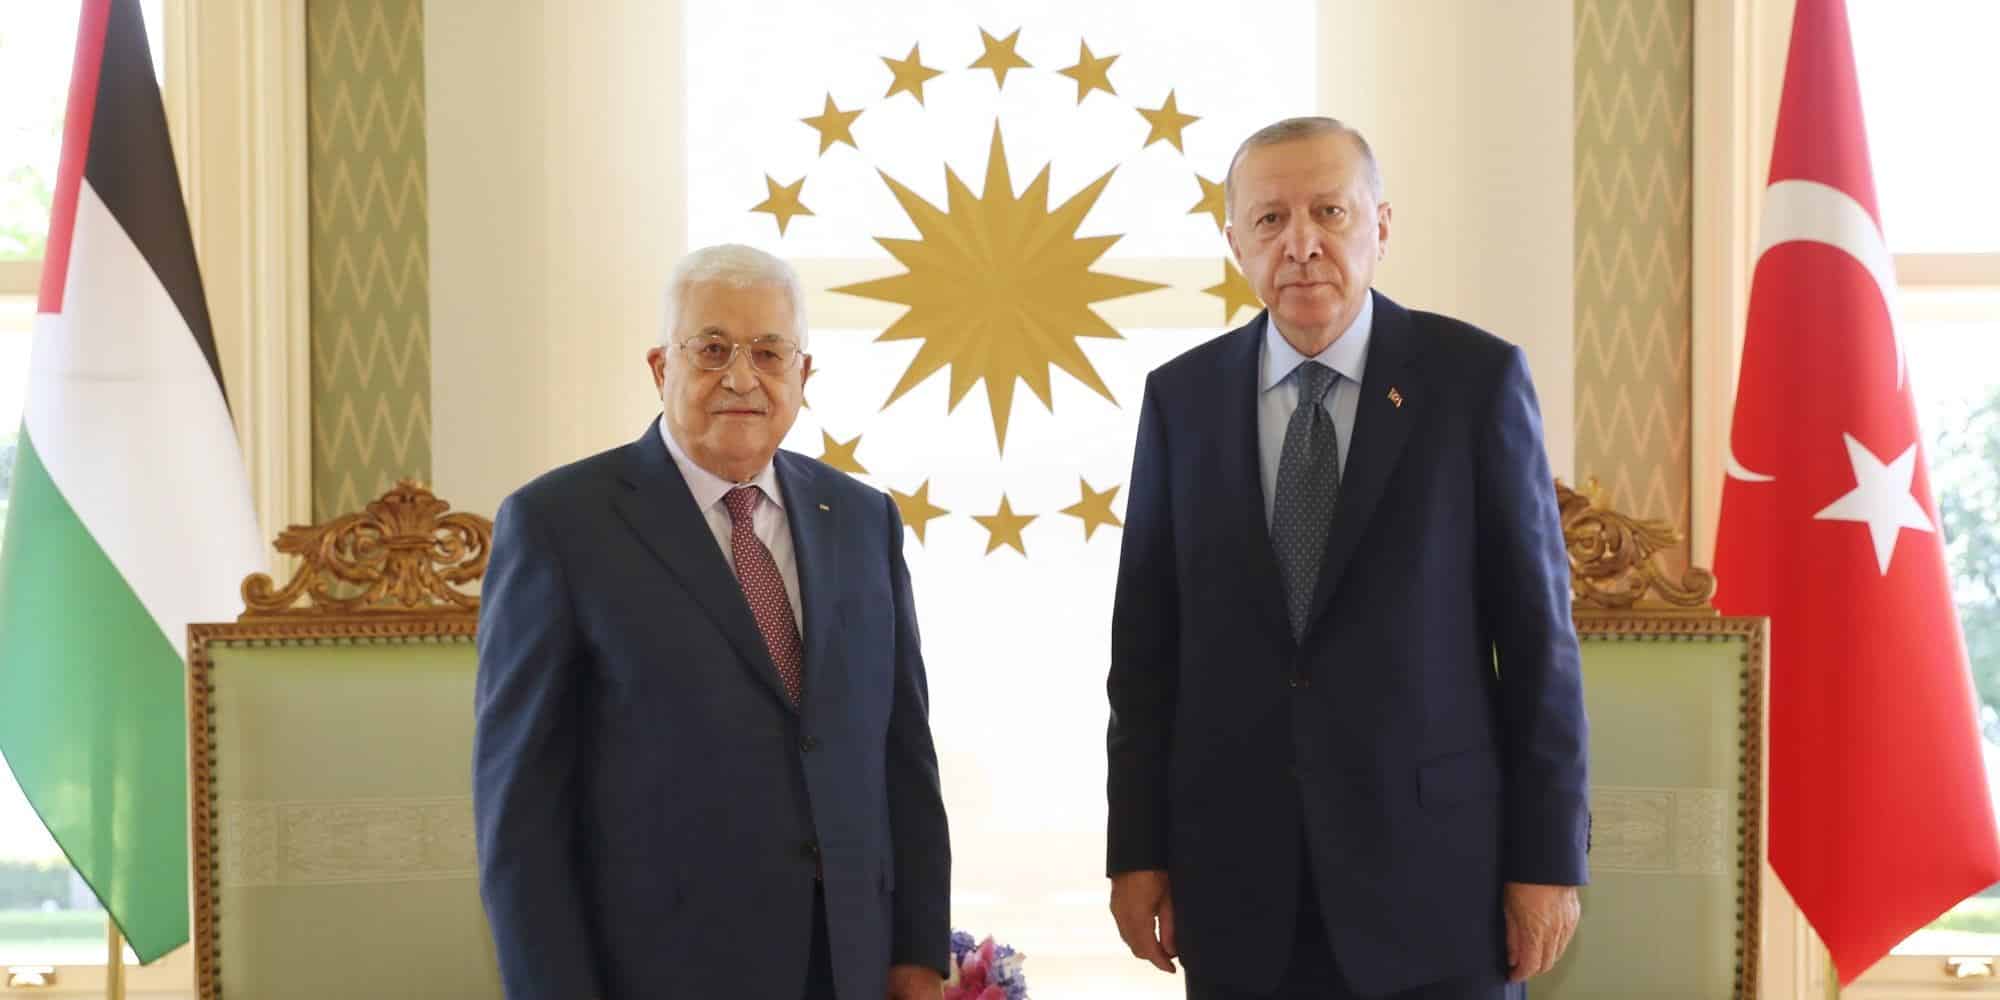 Ο Τούρκος πρόεδρος Ταγίπ Ερντογάν και ο Παλαιστίνιος ομόλογός του Μαχμούντ Αμπάς